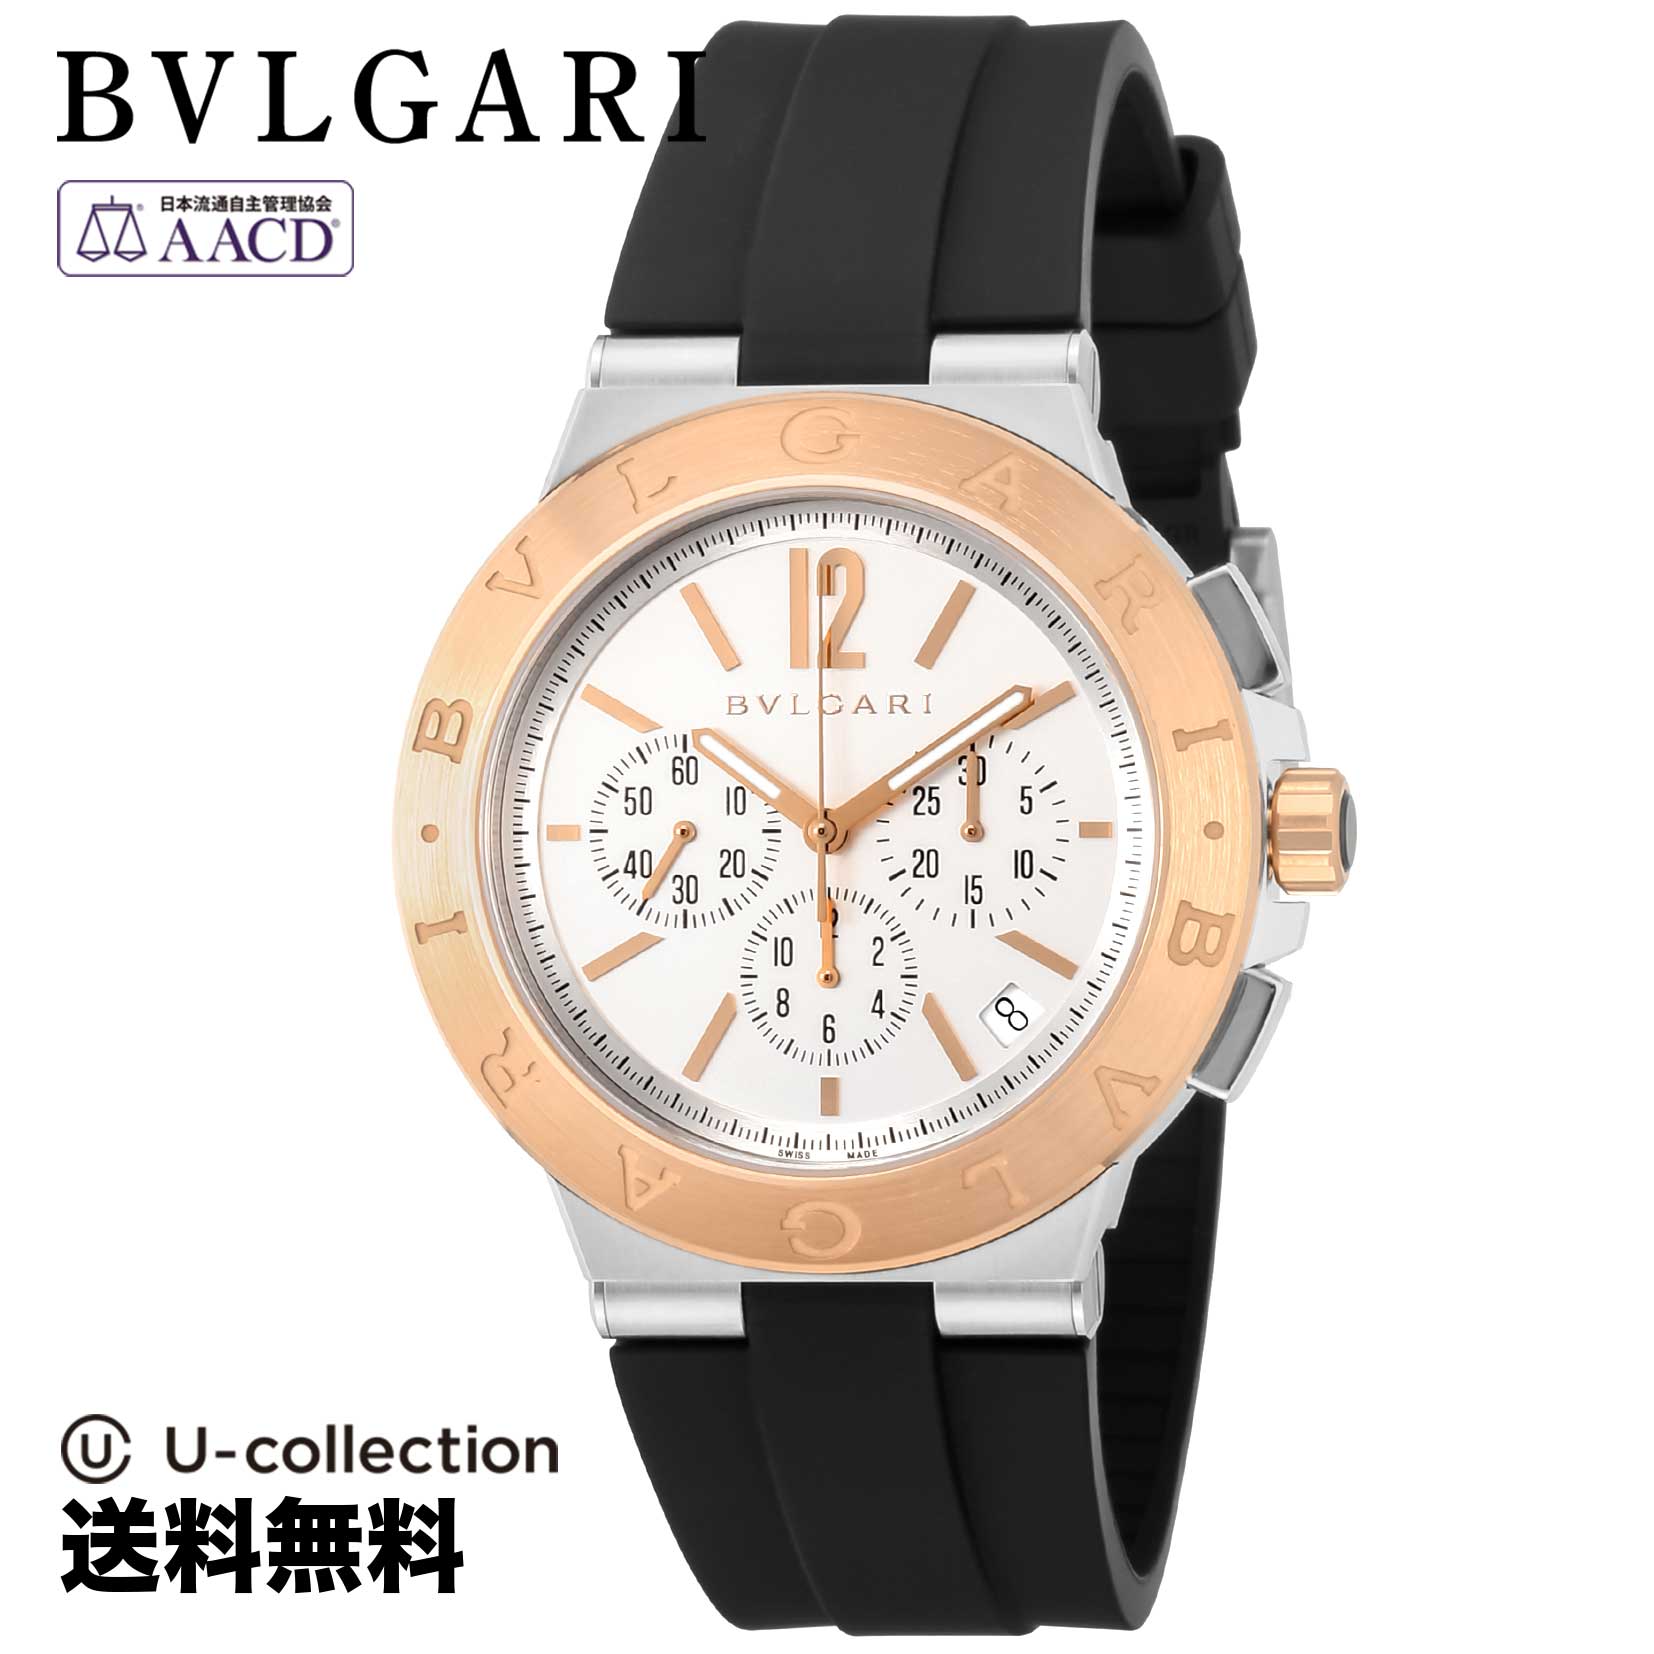 ブルガリ【腕時計】 BVLGARI(ブルガリ) DIAGONO / ディアゴノ メンズ ホワイト 自動巻 DG41WSPGVDCH 時計 ブランド